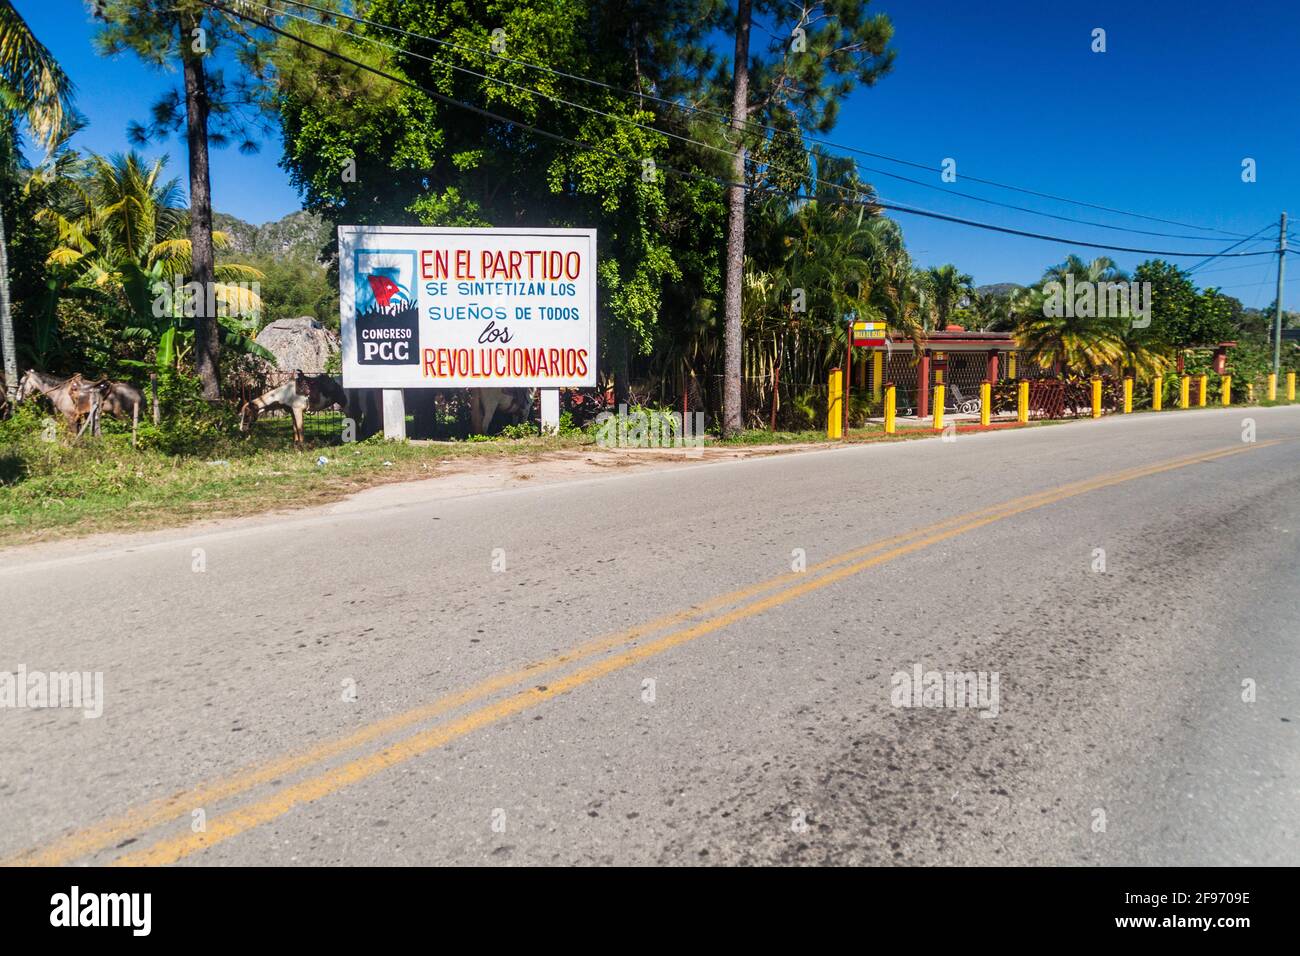 VINALES, CUBA - 18 FÉVRIER 2016 : affiche de propagande près du village de Vinales, Cuba. Il dit: Les rêves de tous les révolutionnaires sont synthétisés dans la Pa Banque D'Images